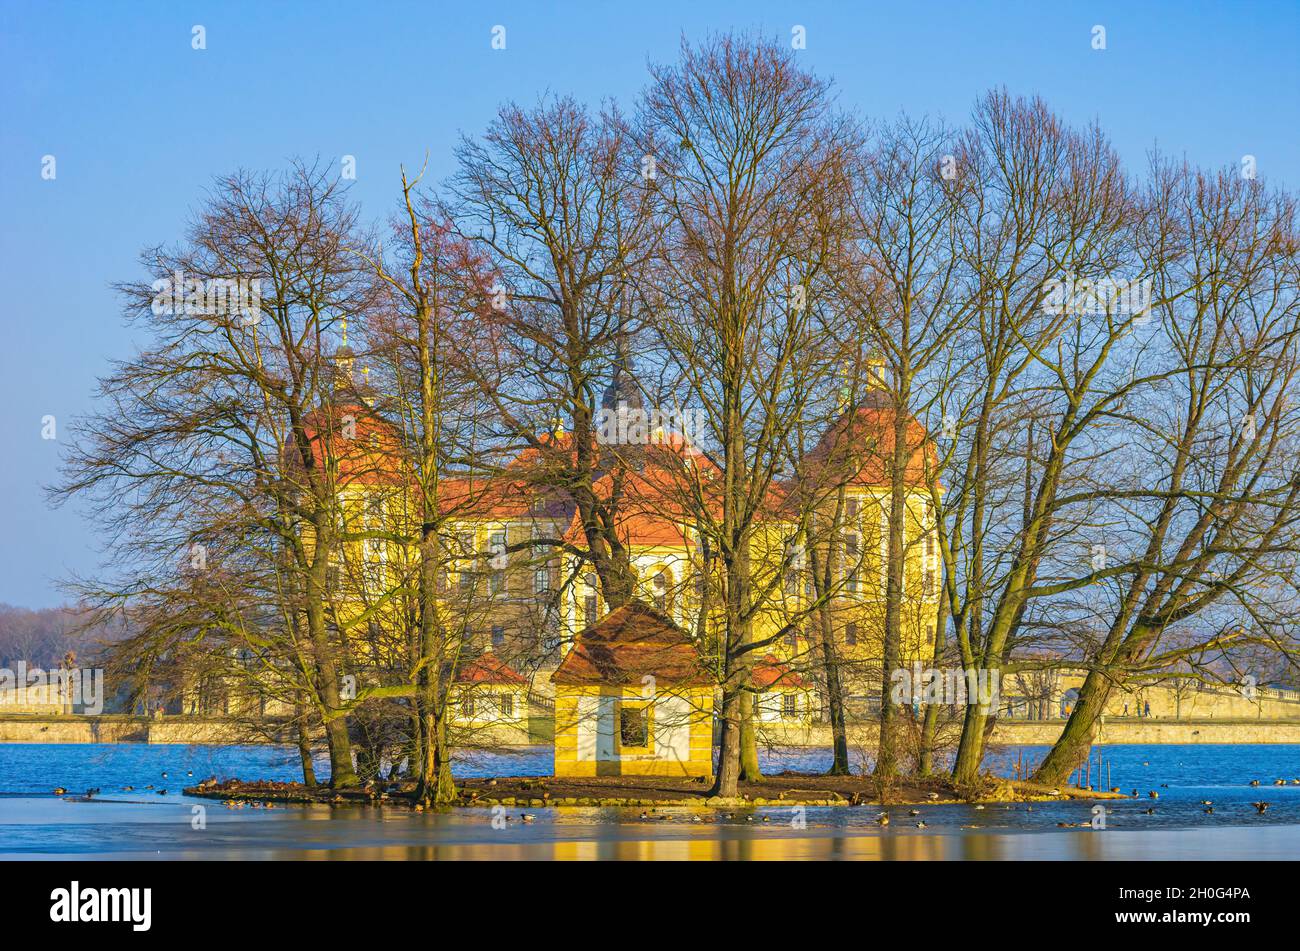 Moritzburg vicino a Dresda, Sassonia, Germania: Viteria Palazzo Moritzburg dietro il gruppo di alberi di un isolotto d'anatra situato nel laghetto del palazzo semi-congelato. Foto Stock